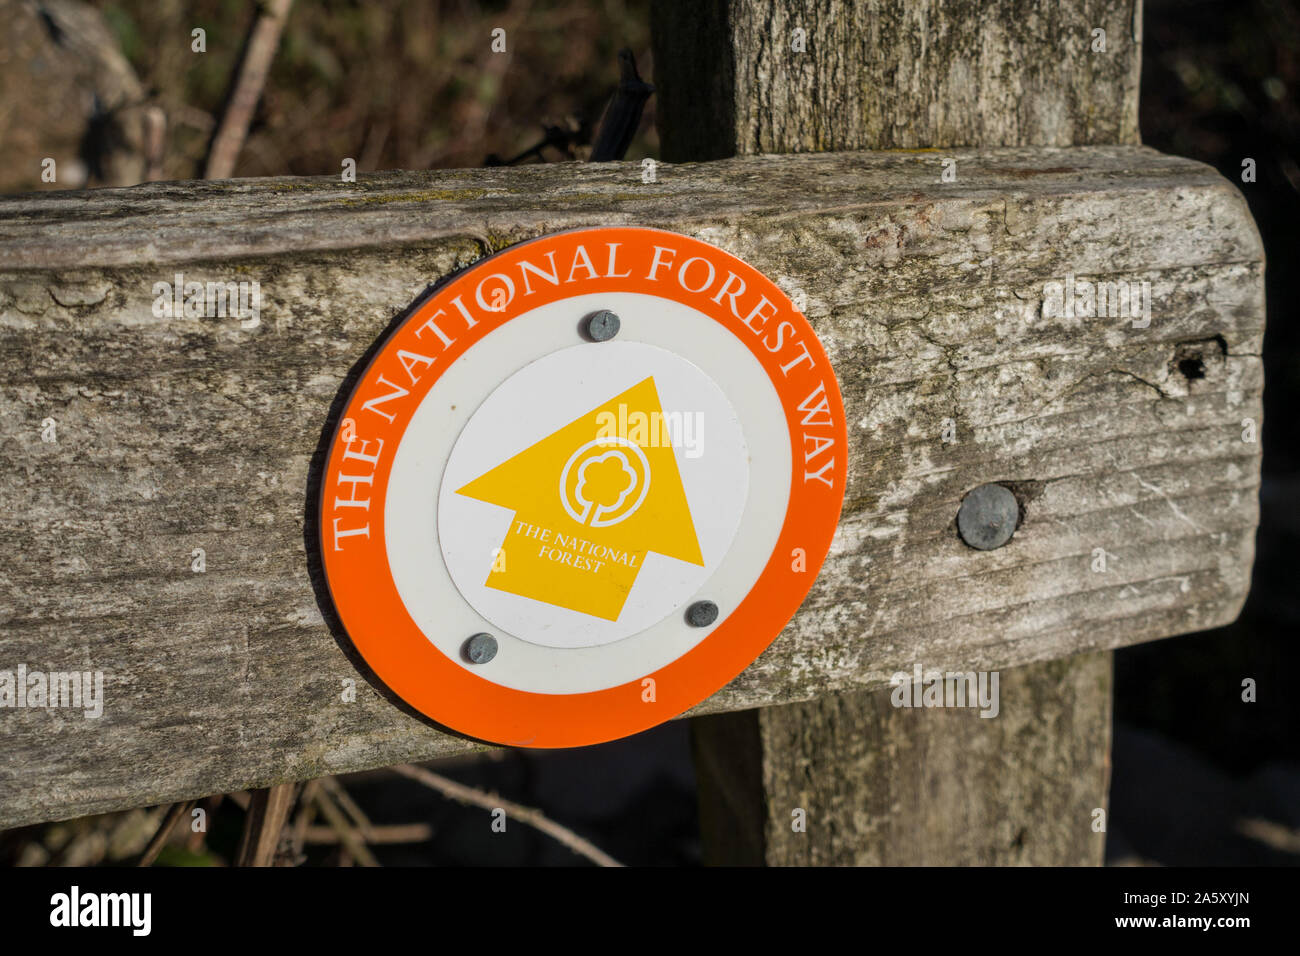 Runde' Der nationalen Wald Weg' Fußweg weg - marker Zeichen auf Zaunpfosten, Ticknall, Derbyshire, England, Großbritannien Stockfoto